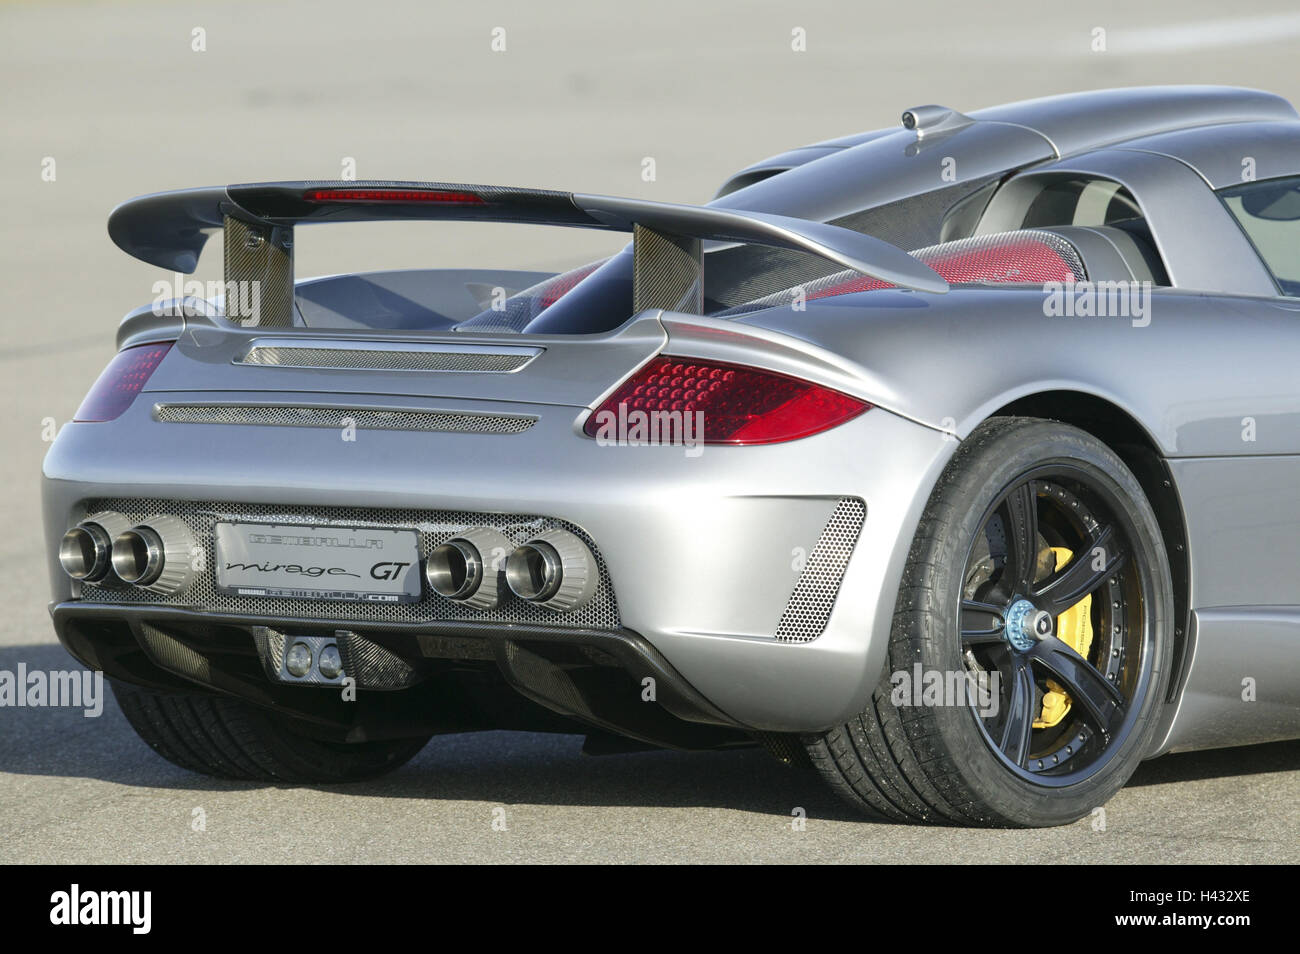 Gemballa Porsche, 'Mirage GT', silver, rear aslant rear view Stock Photo